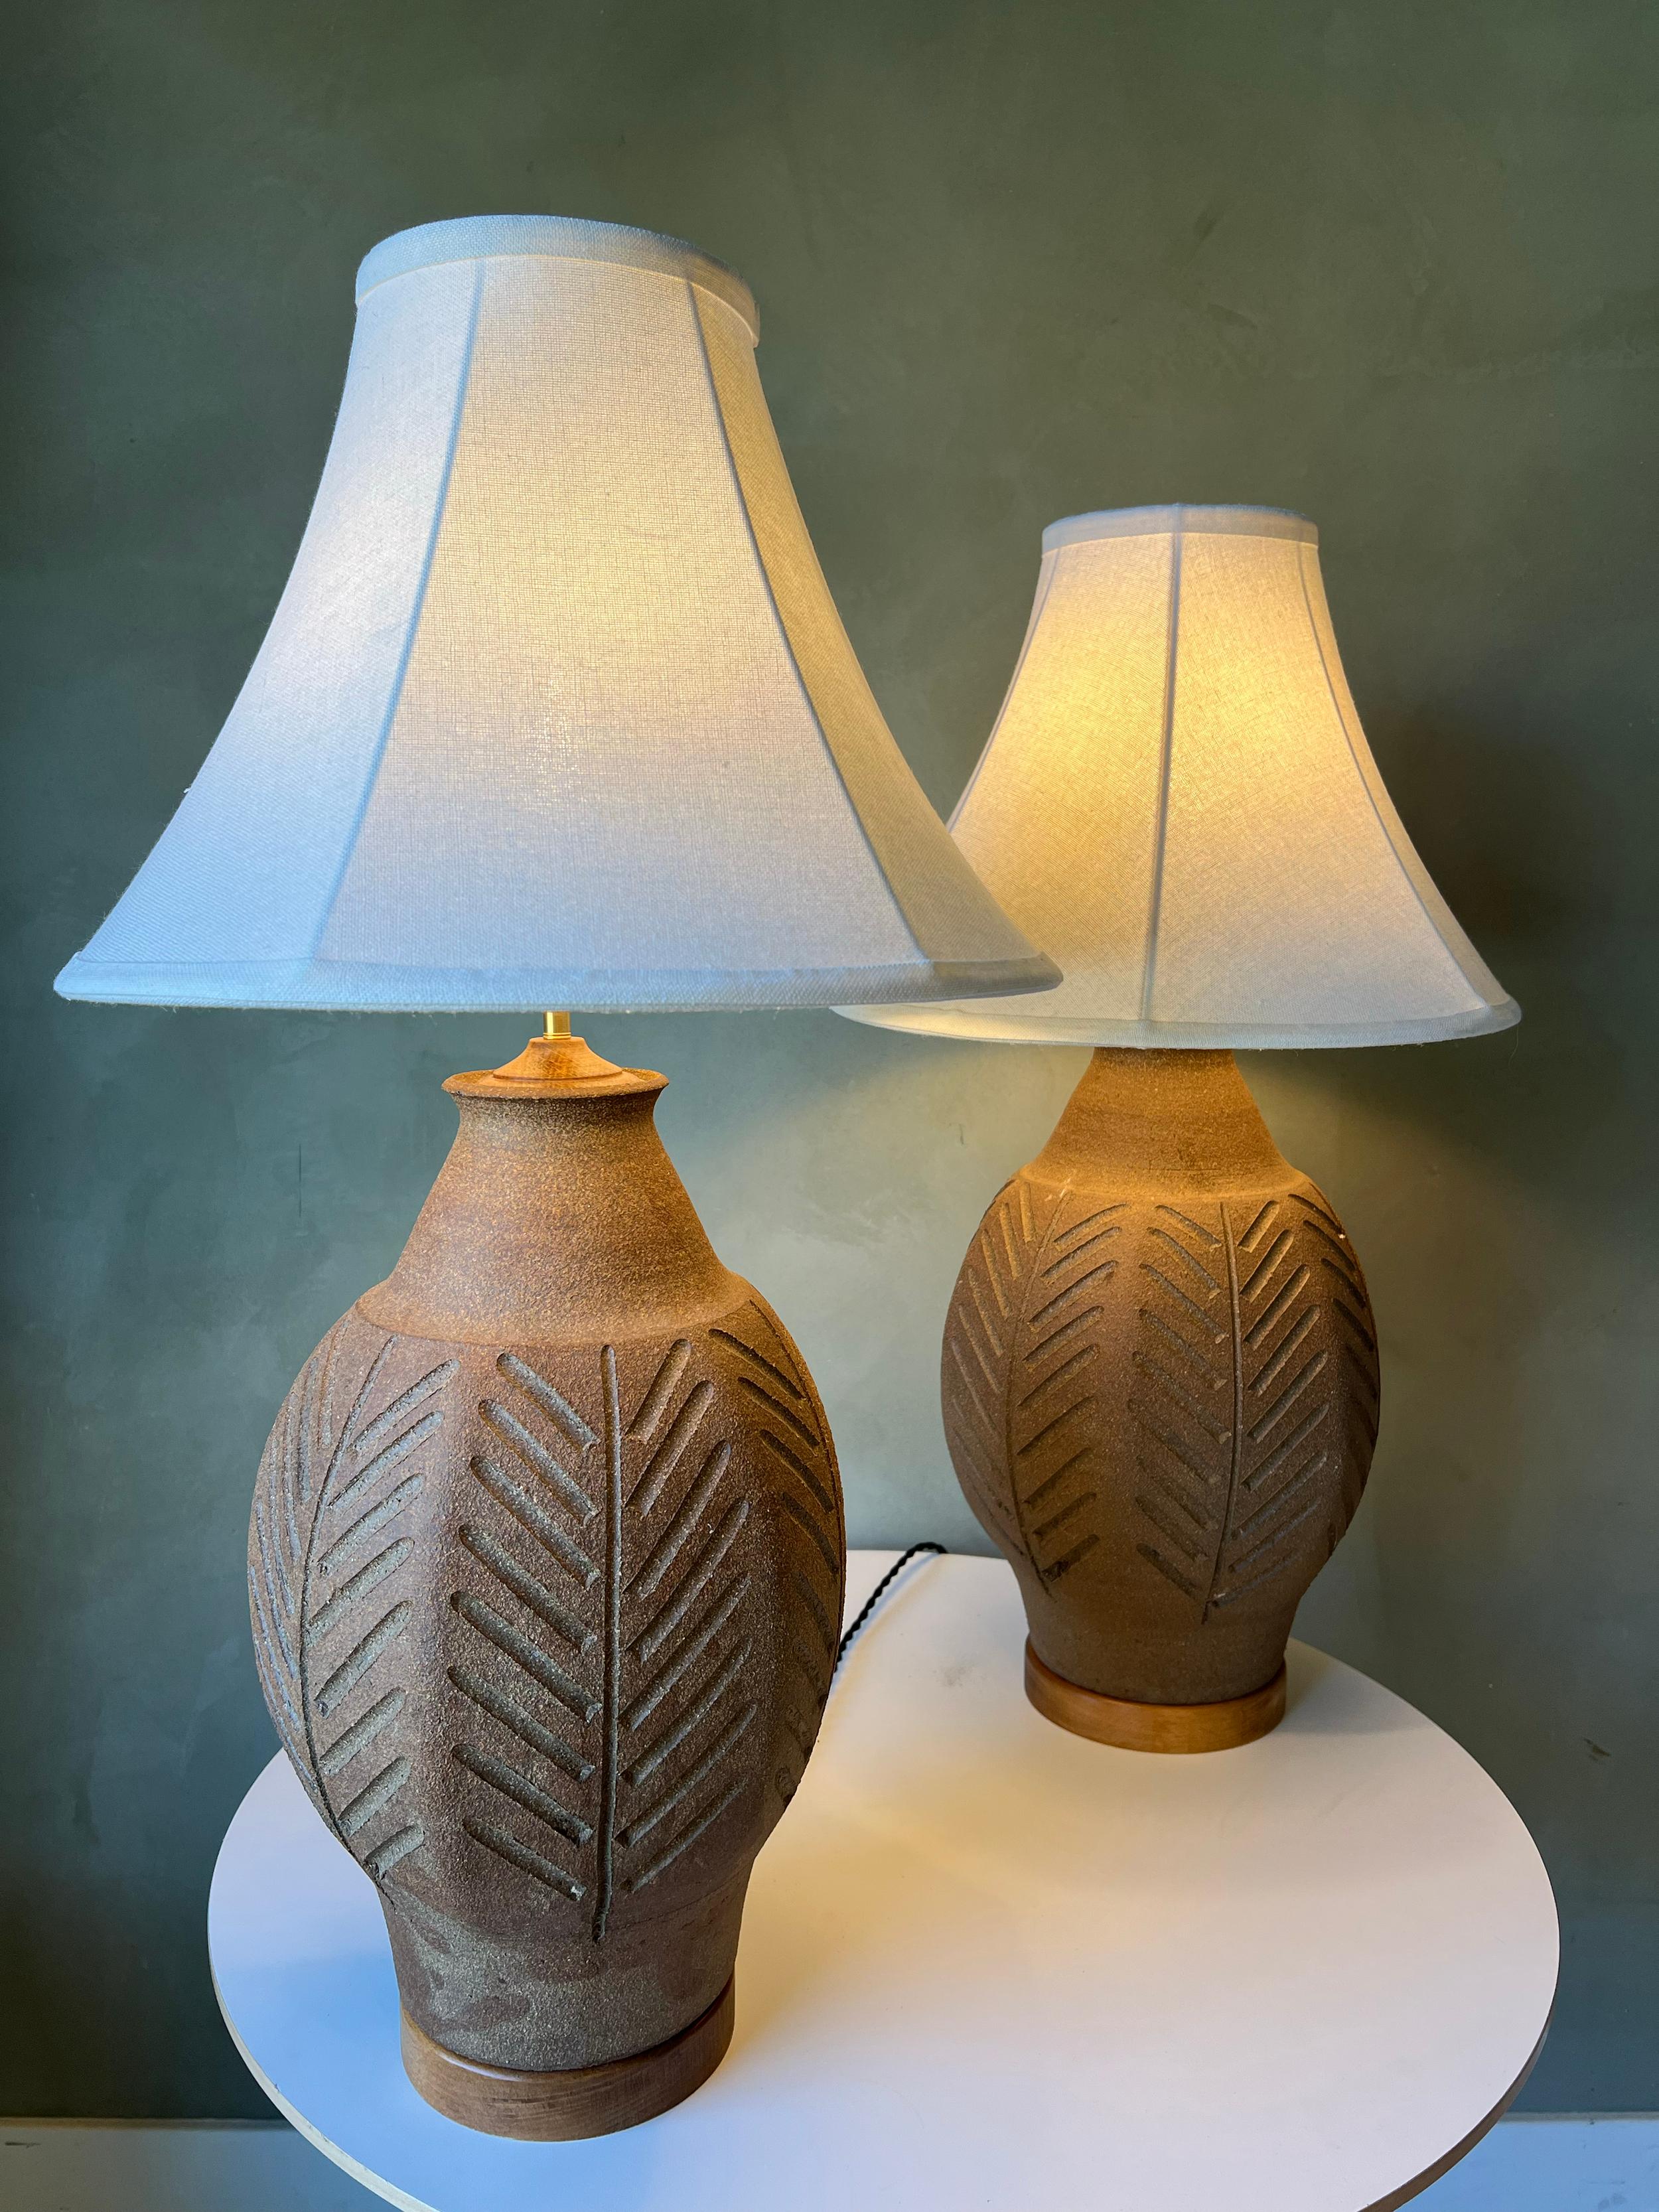 Paire de lampes de table en grès cannelé du moderniste californien Brent Bennett. Ces lampes ont été recâblées, ont de nouveaux abat-jours en lin et sont prêtes à l'emploi. Magnifique motif cannelé qui entoure le vase. Pas d'ébréchures ni de